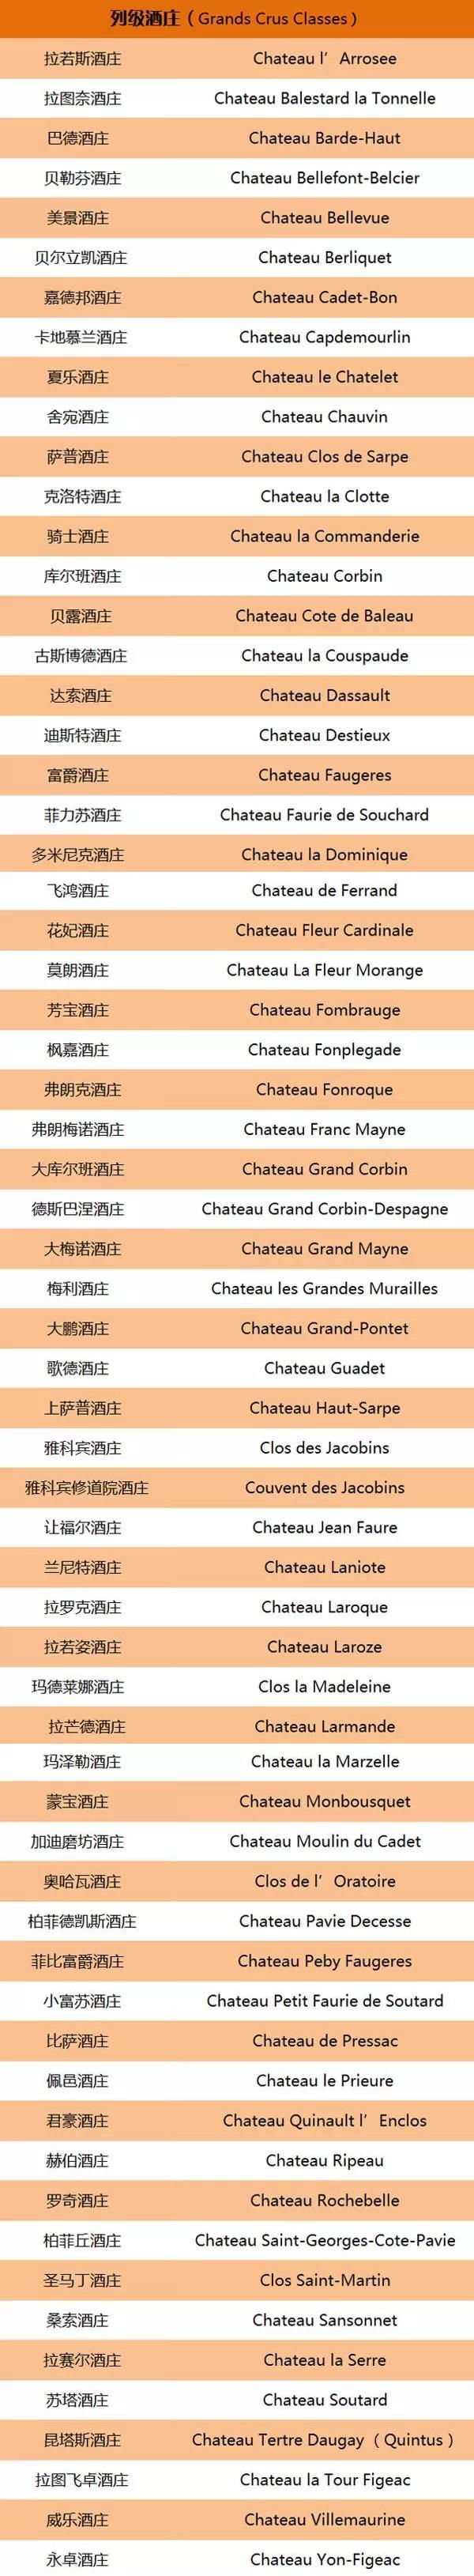 法国列级酒庄名单图片